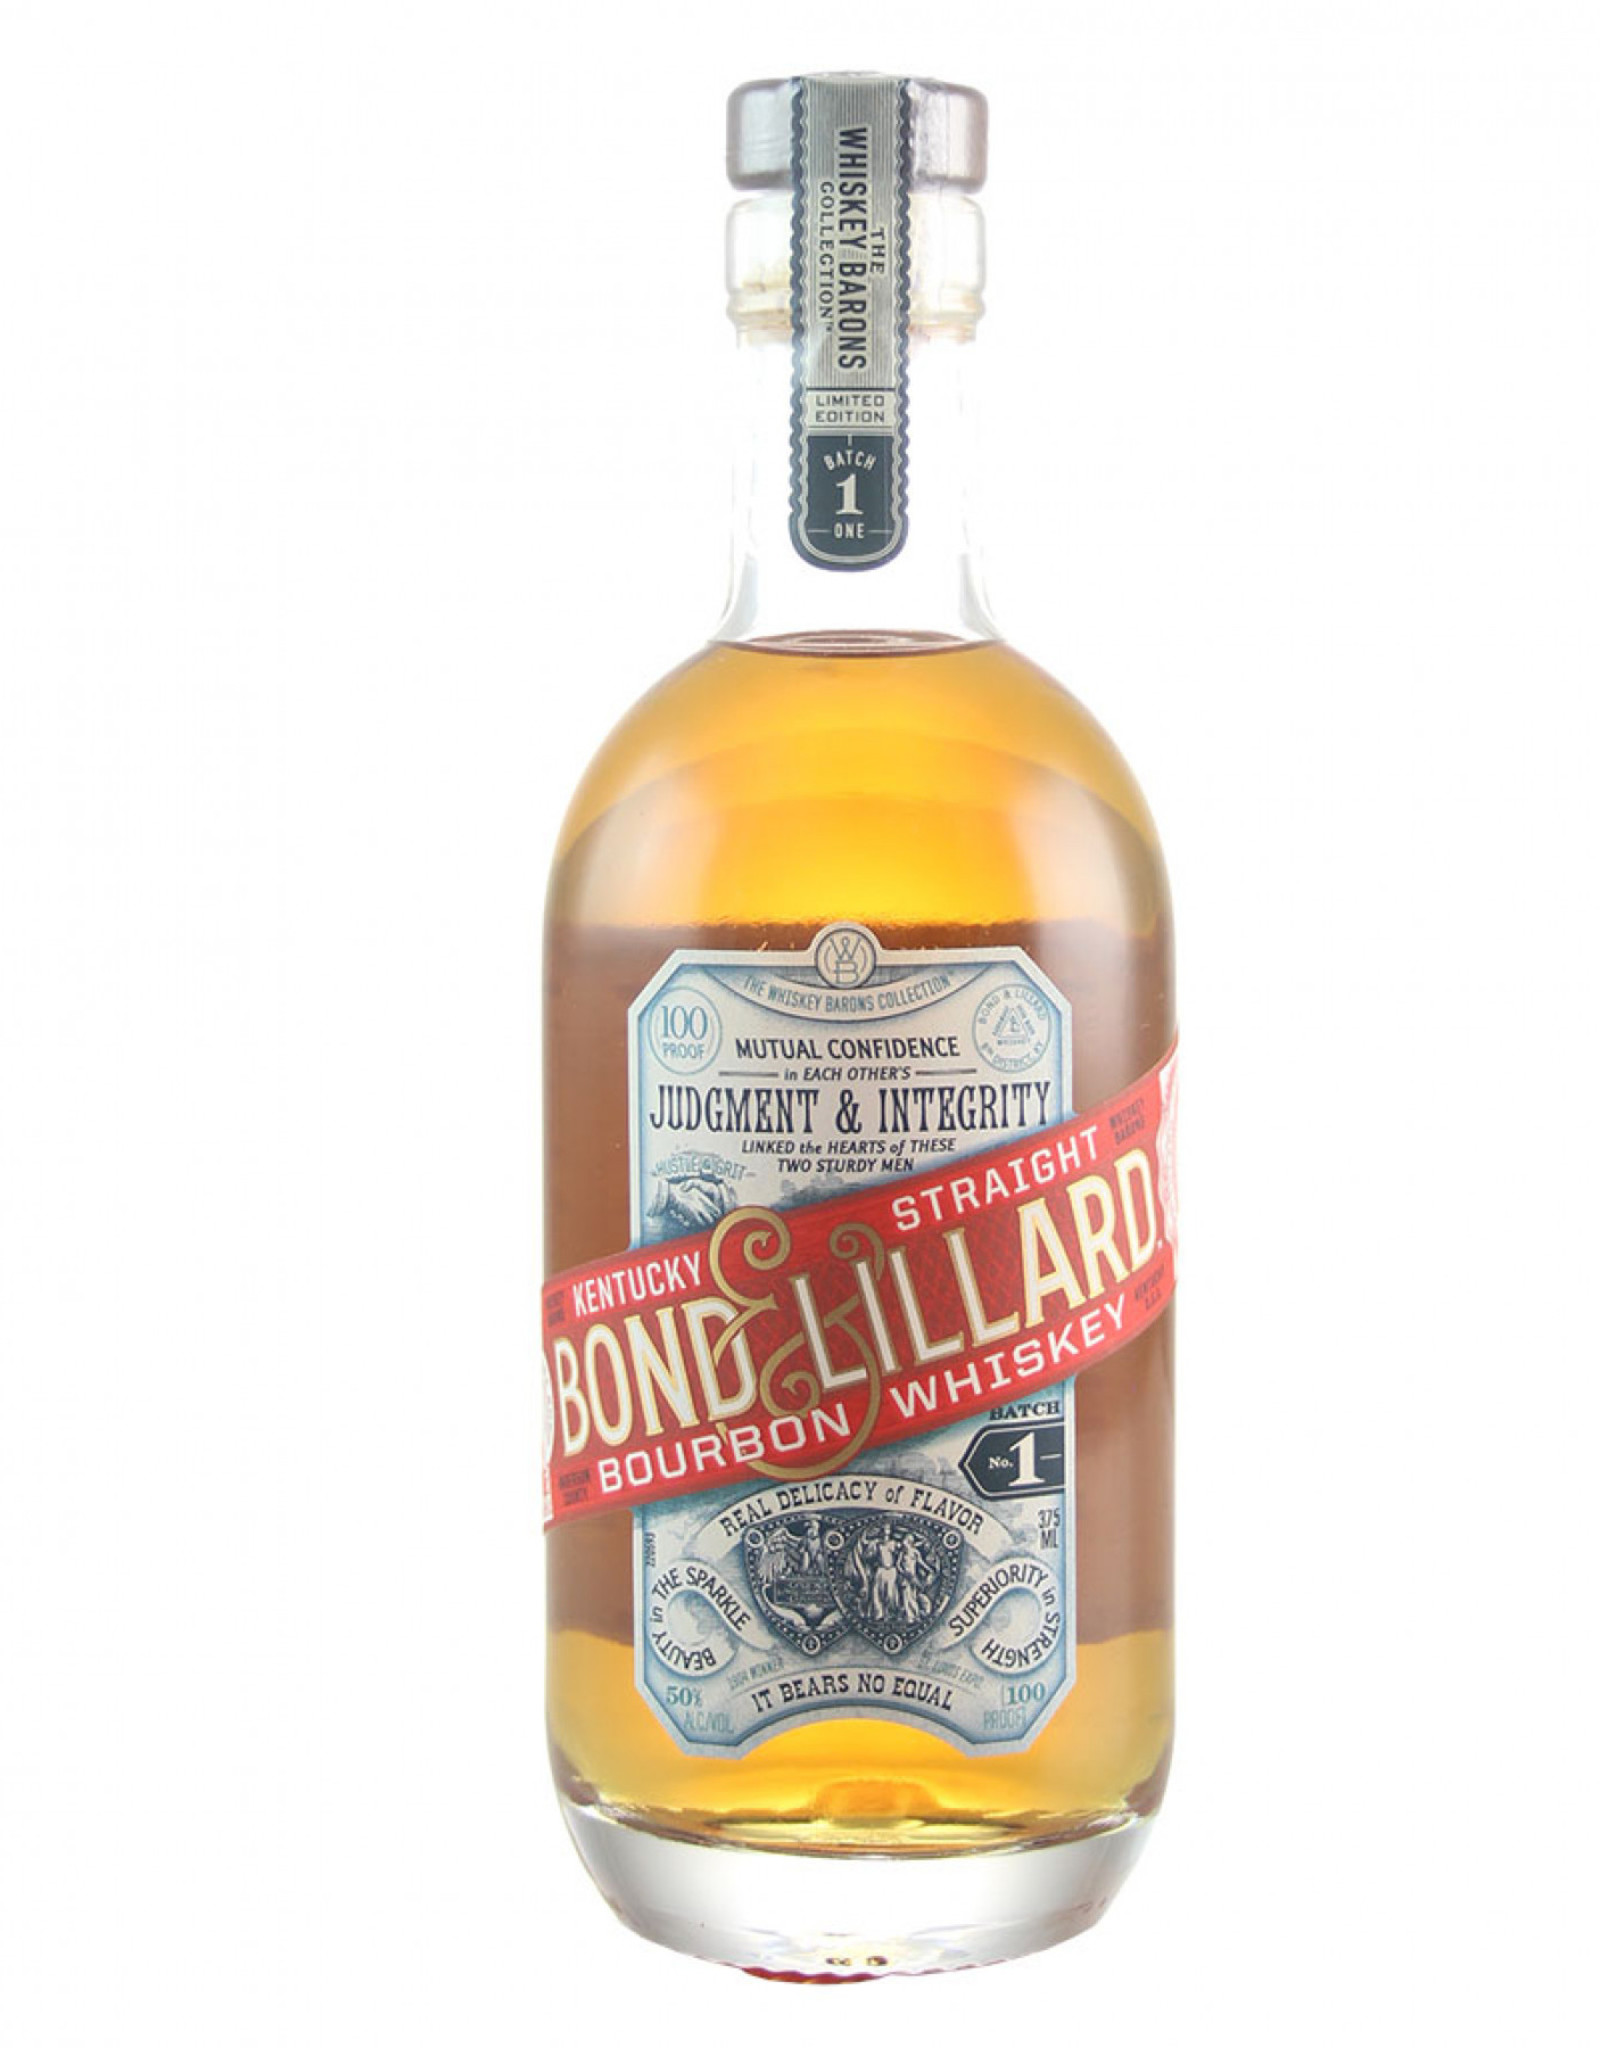 Bond & Lillard Bond & lillard Bourbon 375ml